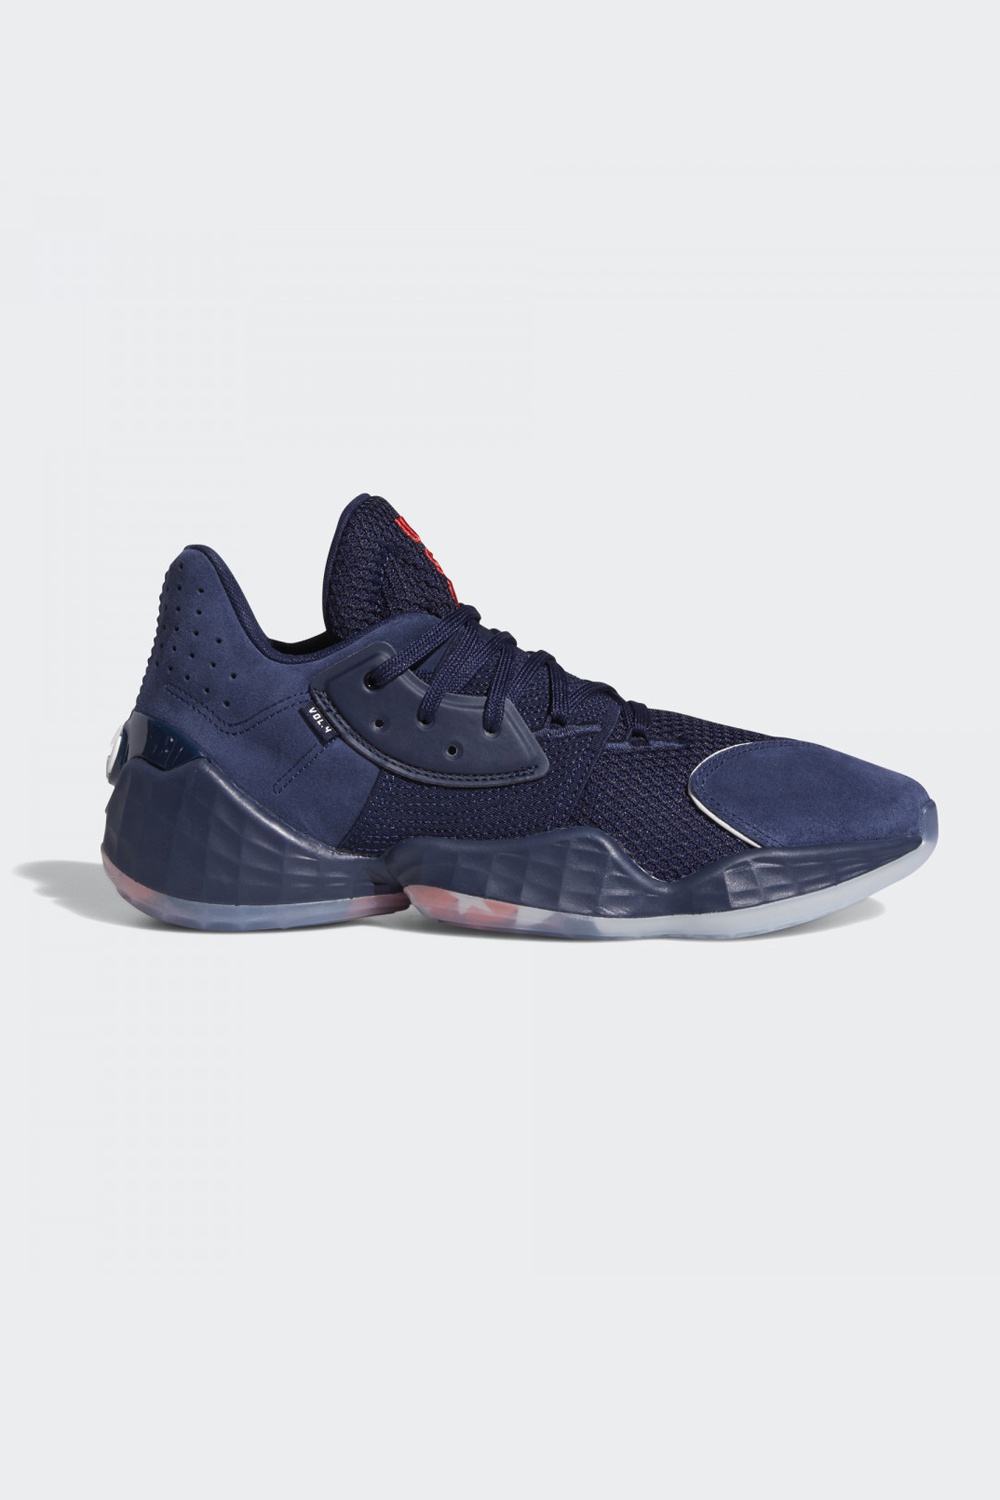 Adidas Solid Color Men's Basketball Shoes | Odel.lk